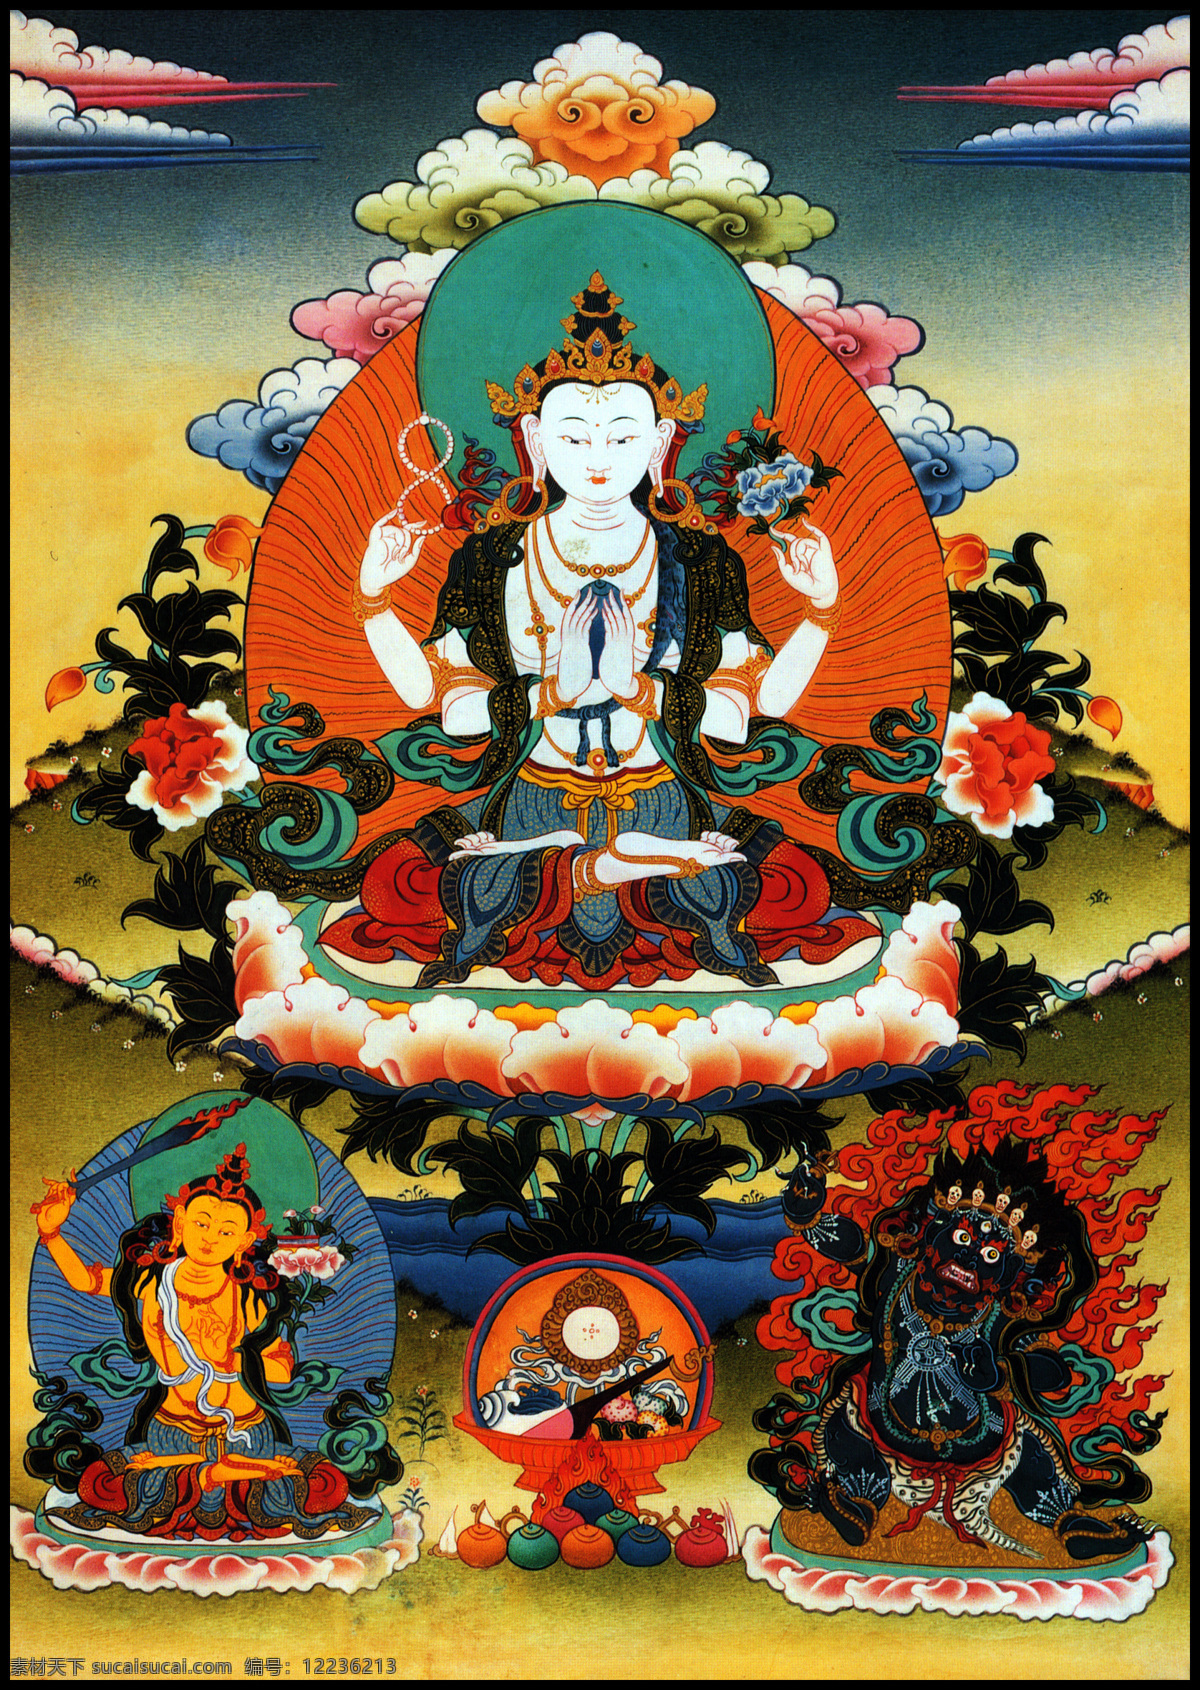 藏传佛教 成就 传承 佛 佛教 菩萨 唐卡 三 怙 主 设计素材 模板下载 老唐卡 西藏 藏传 密宗 法器 成就者 大德 喇嘛 活佛 三怙主 宗教信仰 文化艺术